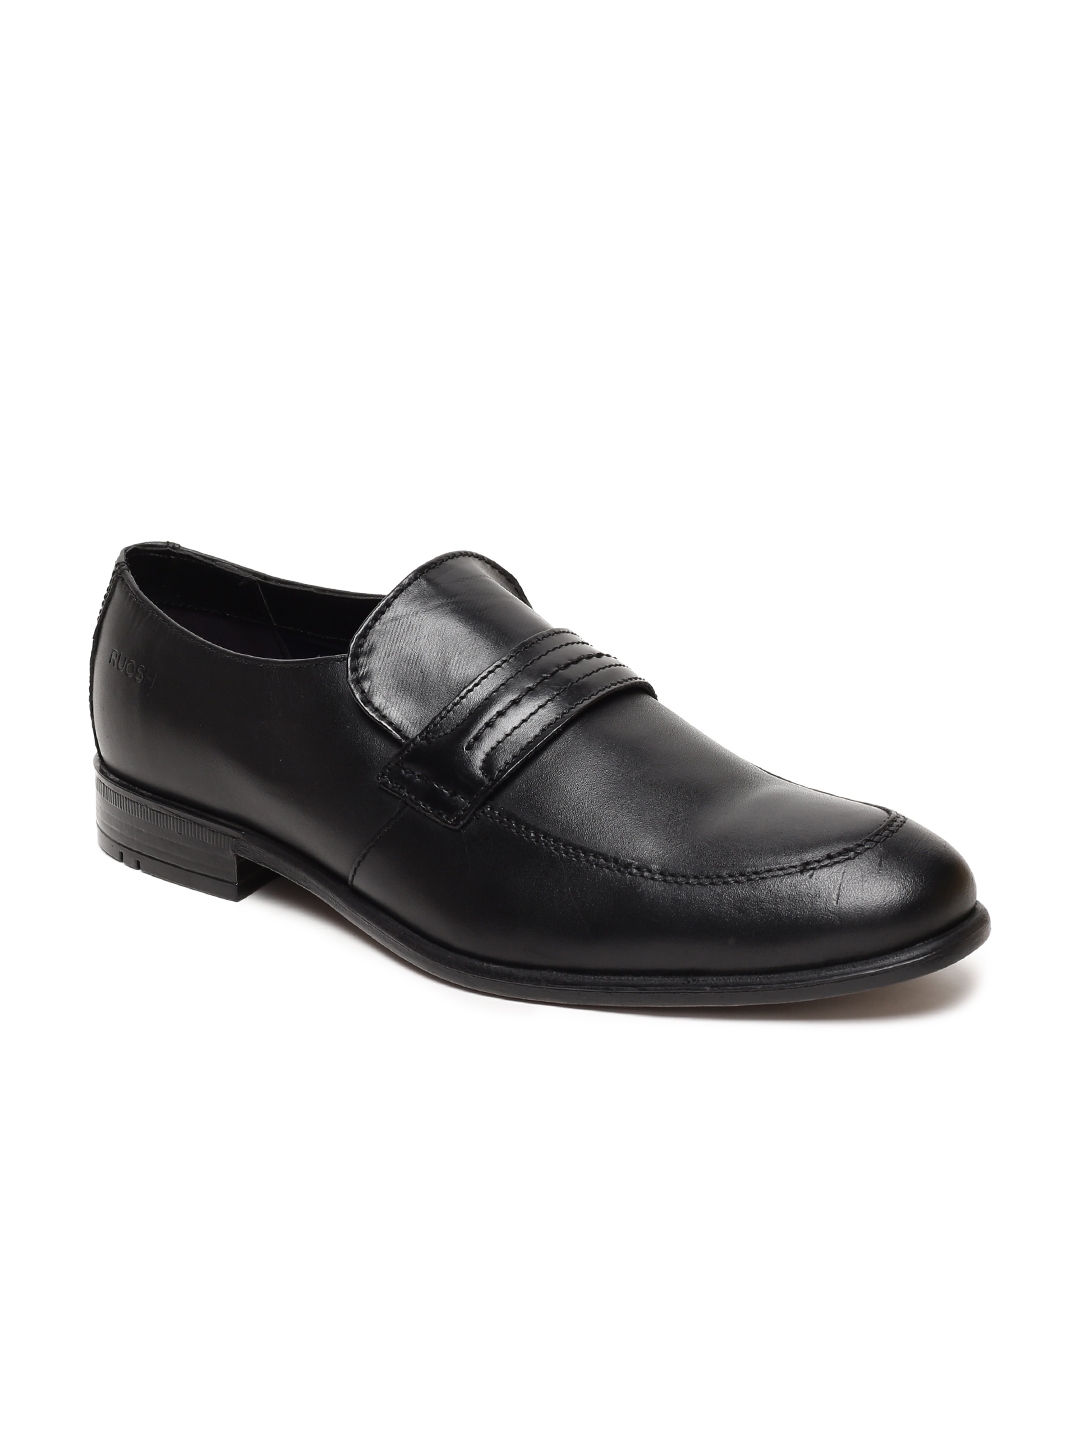 Buy Ruosh Men Black Formal Leather Slip On Shoes - Formal Shoes for Men ...